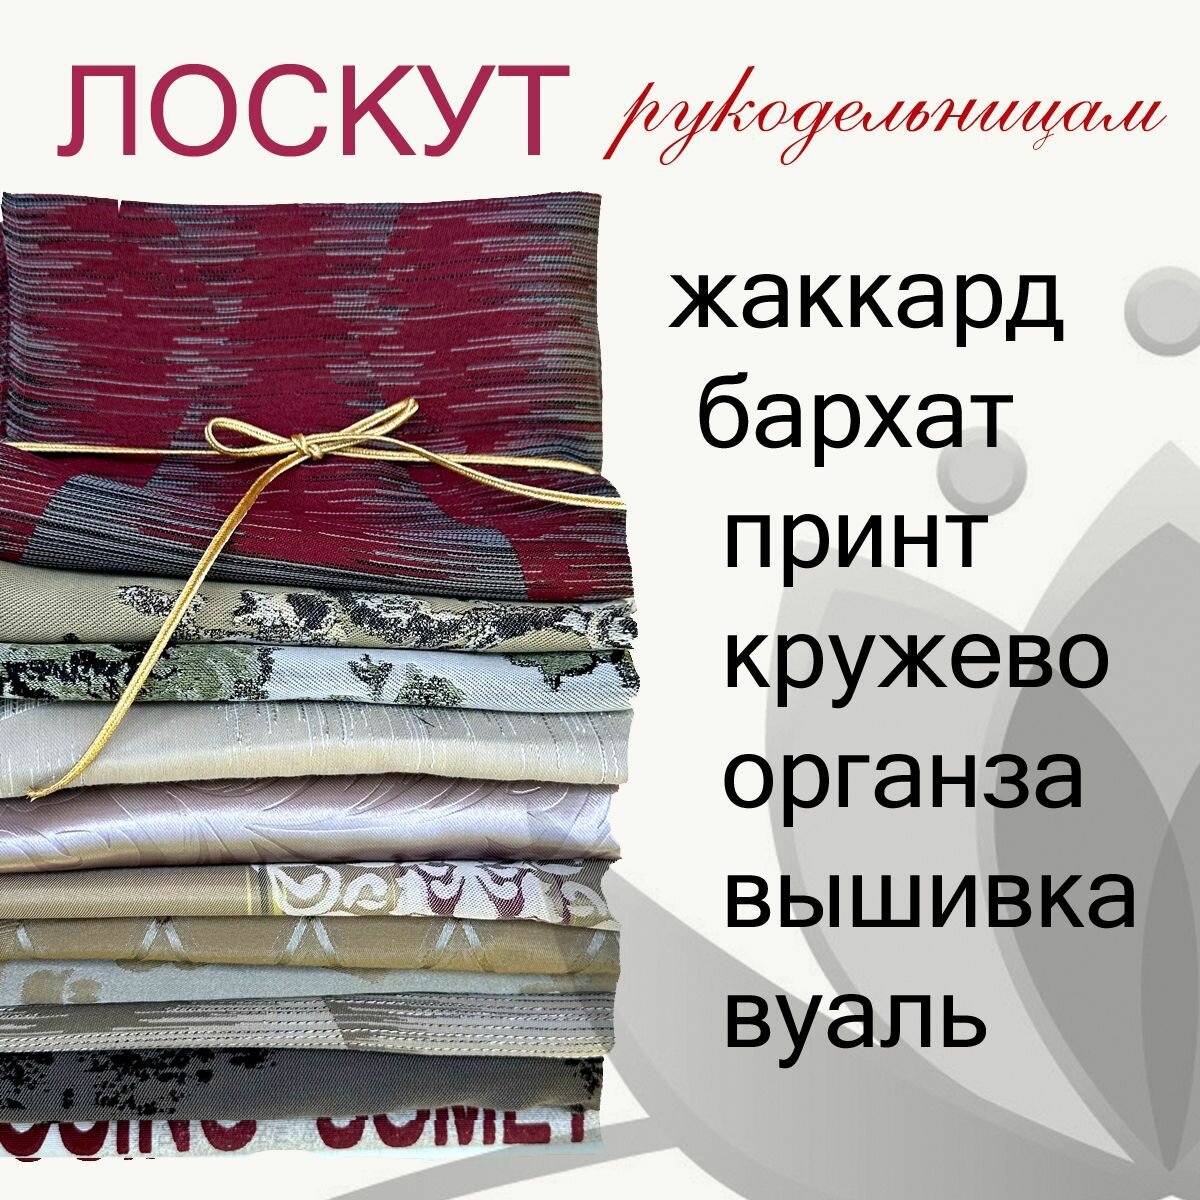 Лоскут набор для рукоделия включающий ткани для шитья подушек, декора для дома, мягких игрушек и одежды для кукол 1 кг